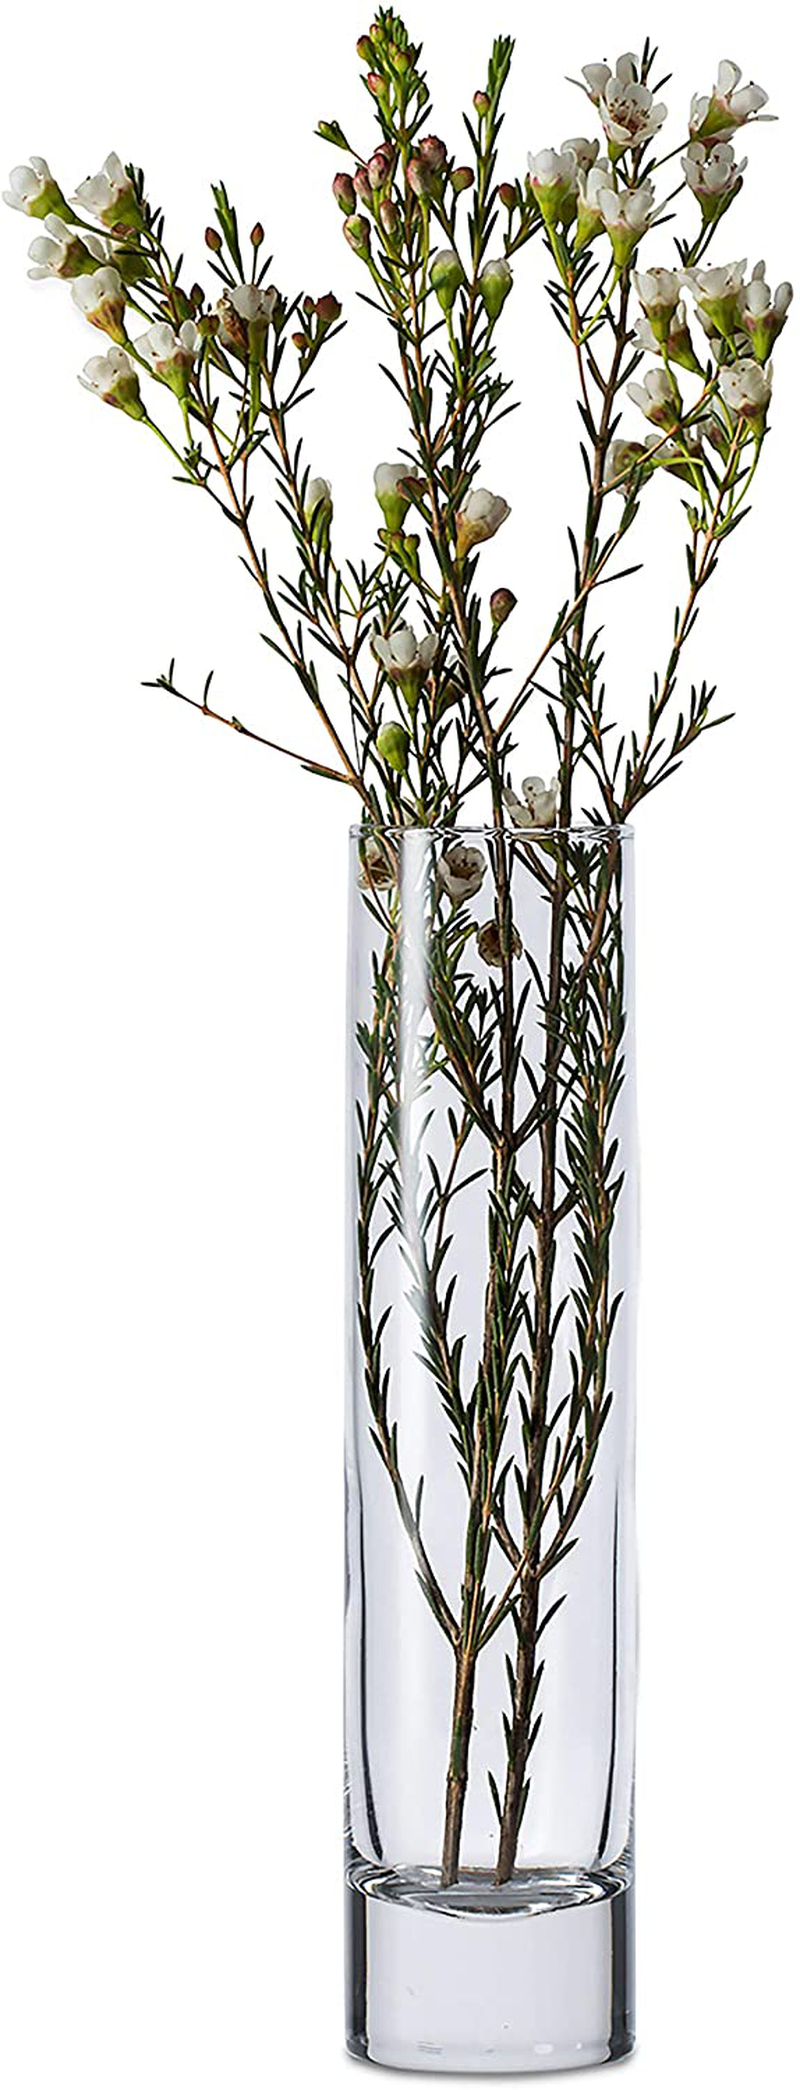 Libbey Cylinder Bud Vases, 7.5-inch, Set of 12